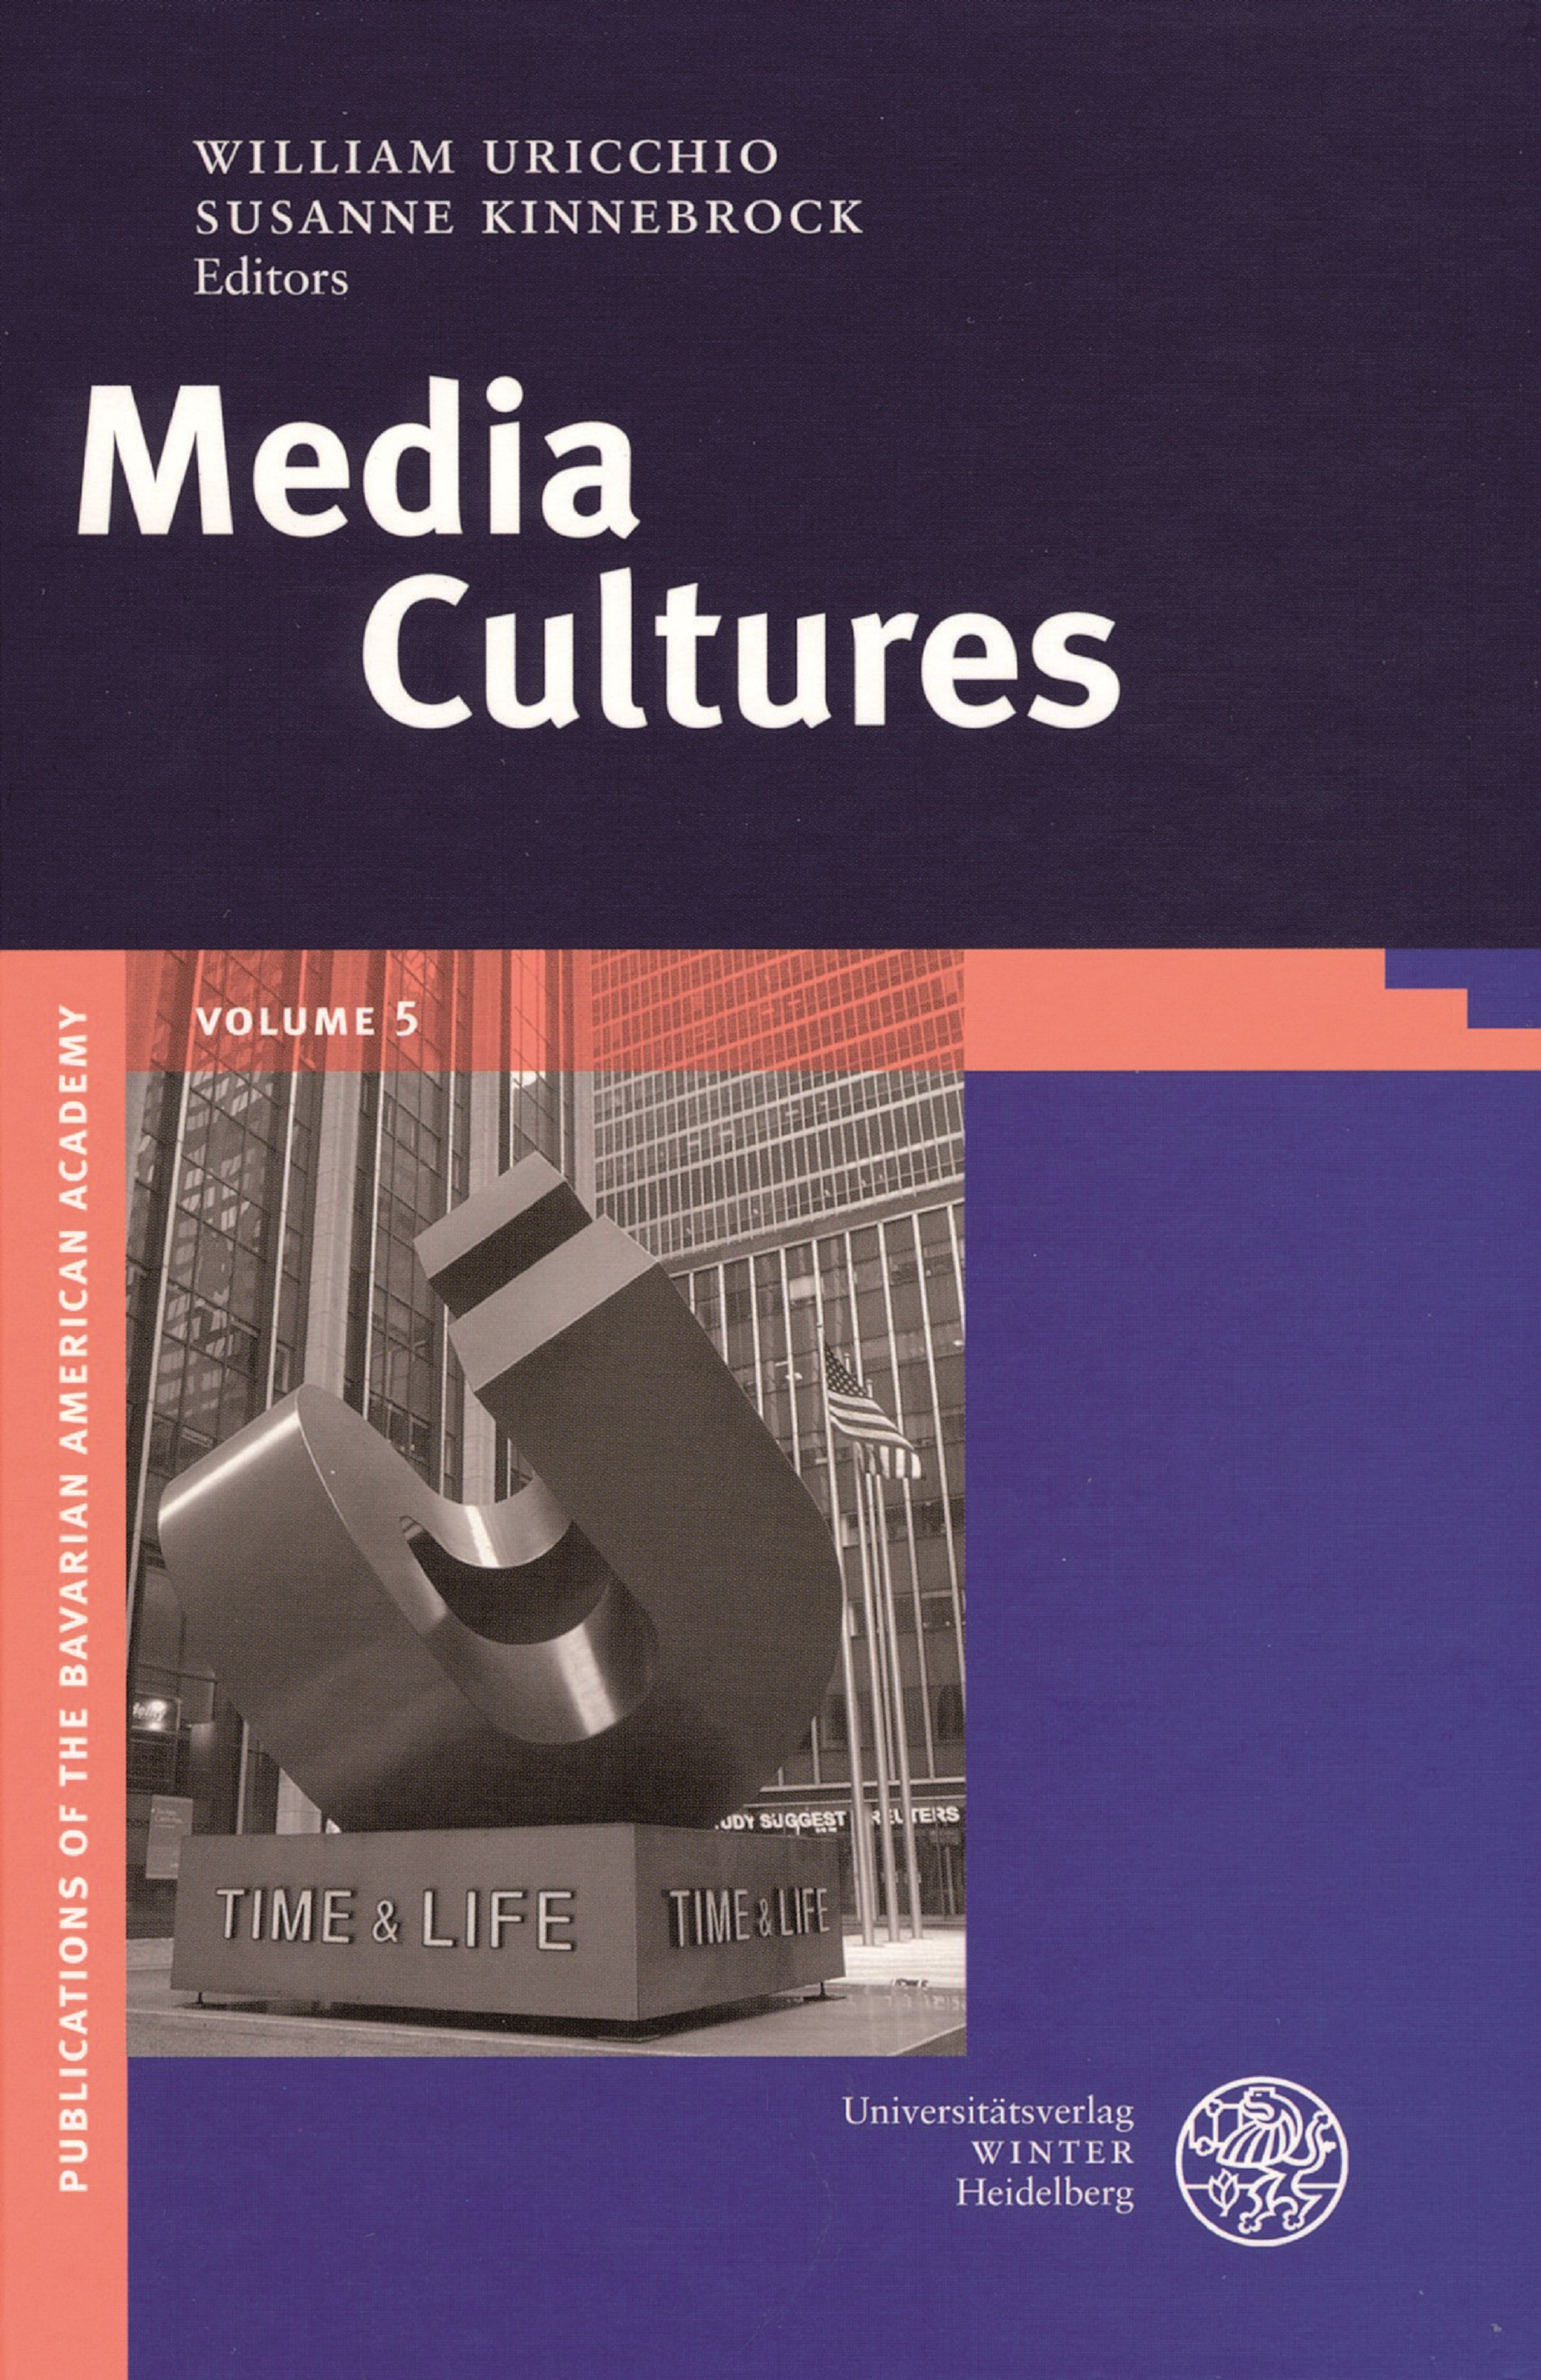 BAA publication Vol. 5 Media Cultures